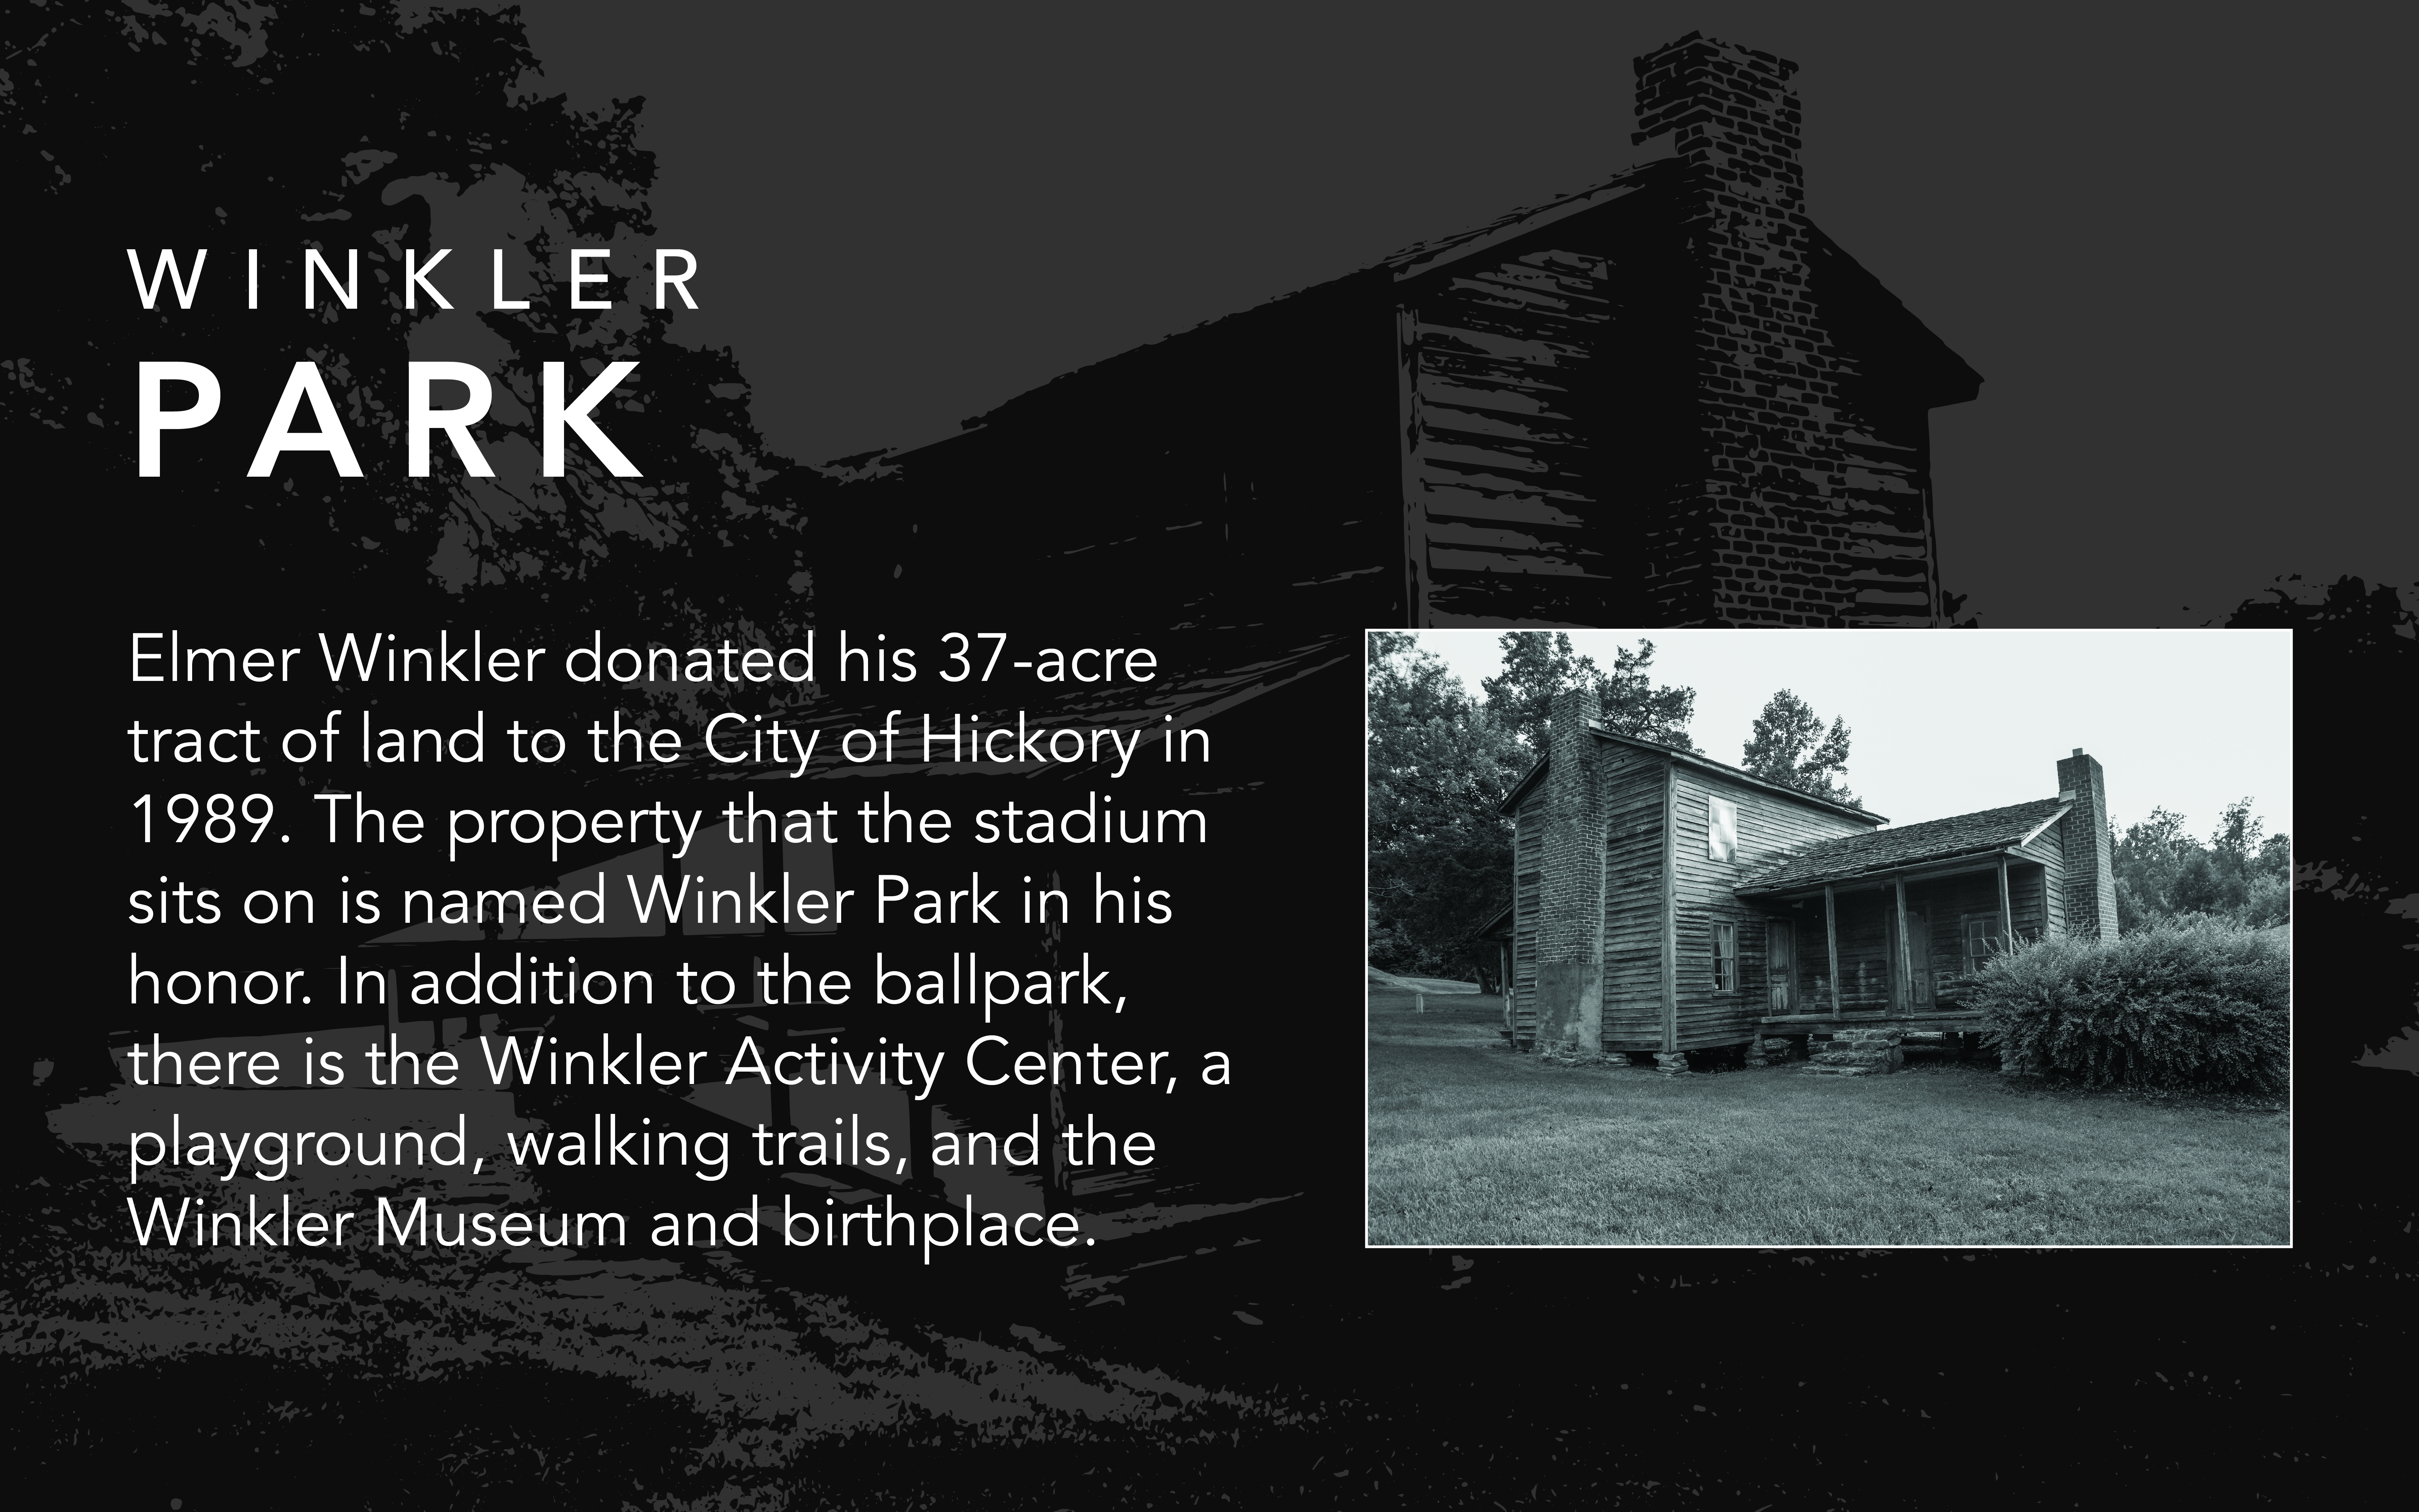 Winkler Park